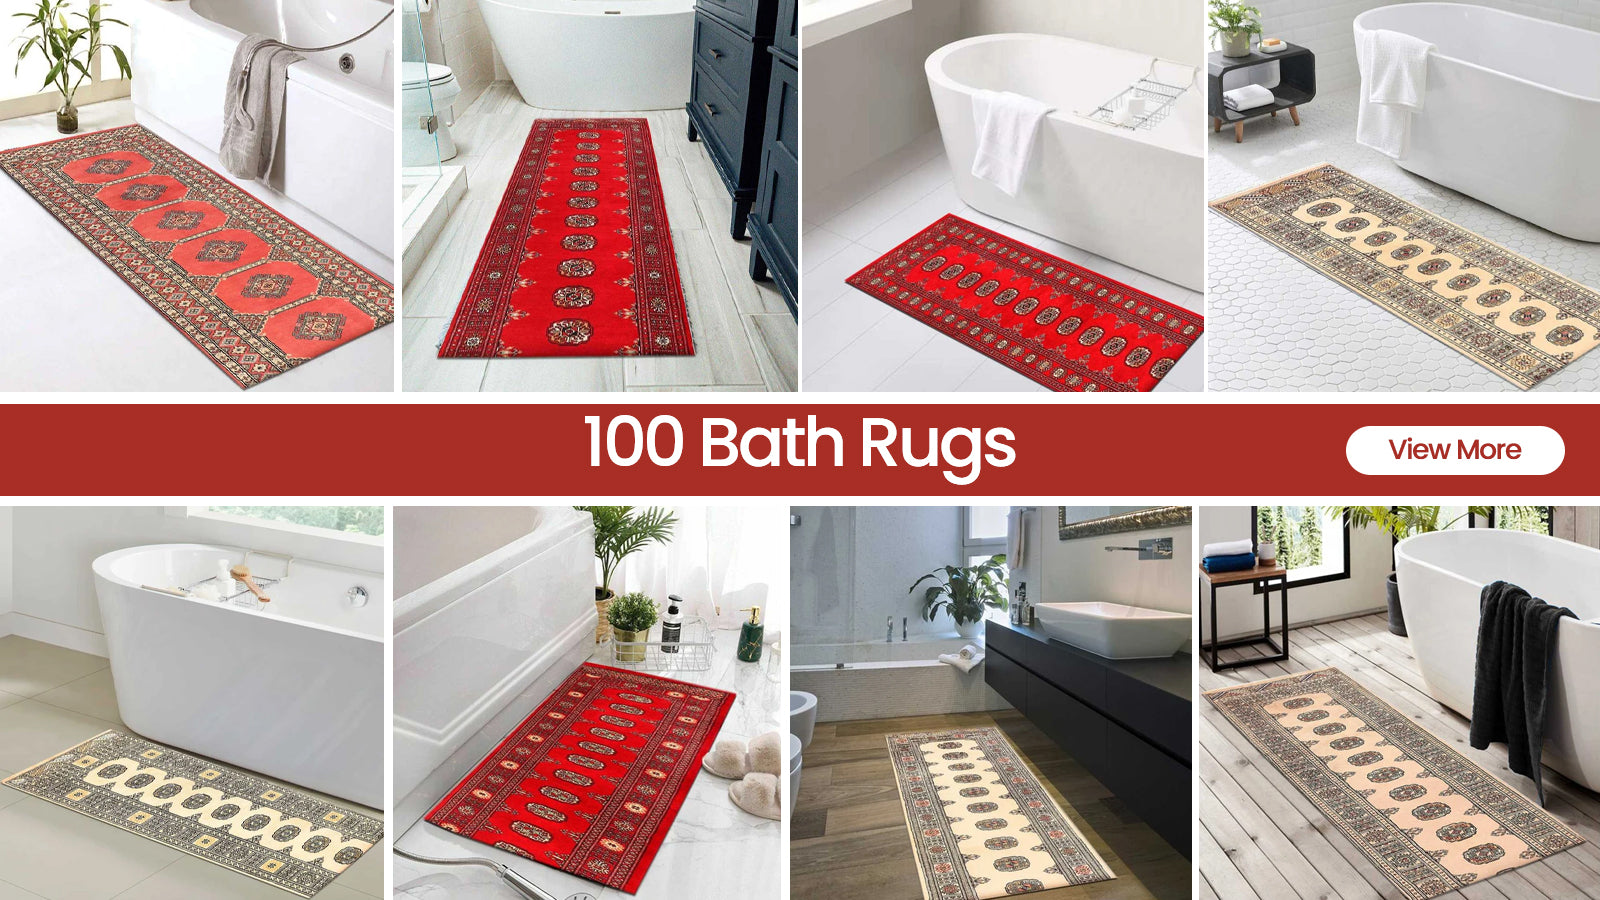 Super Absorbent Bath Mat Non-slip Quick Drying Bathroom Rug Entrance  Doormat Bathtub Floor Mats Toilet Carpet Home Decor